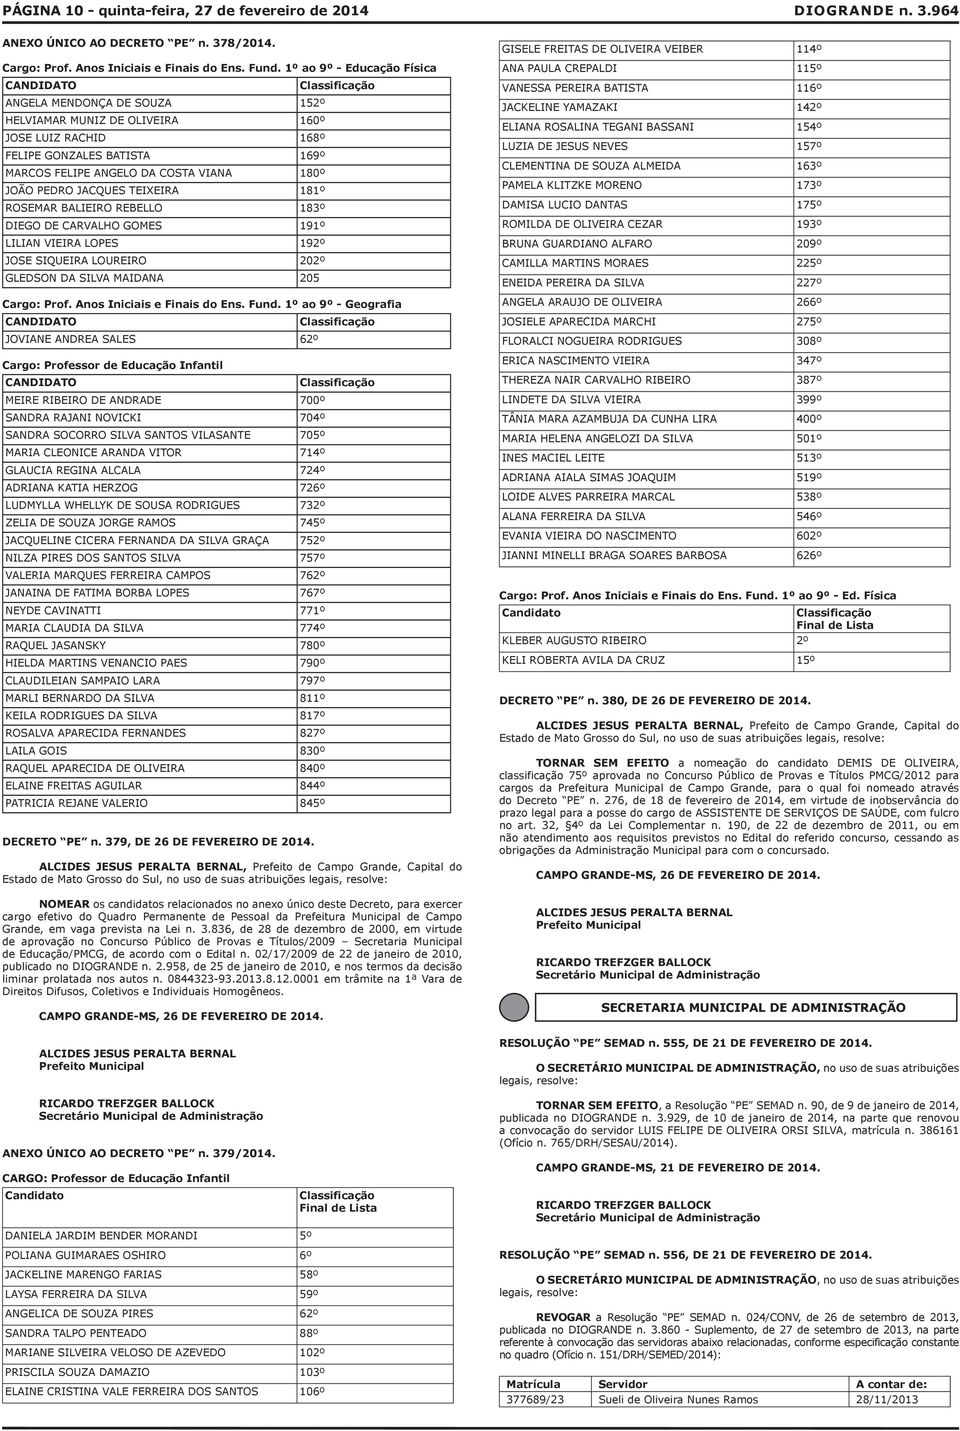 PEDRO JACQUES TEIXEIRA 181º ROSEMAR BALIEIRO REBELLO 183º DIEGO DE CARVALHO GOMES 191º LILIAN VIEIRA LOPES 192º JOSE SIQUEIRA LOUREIRO 202º GLEDSON DA SILVA MAIDANA 205 Classificação Cargo: Prof.